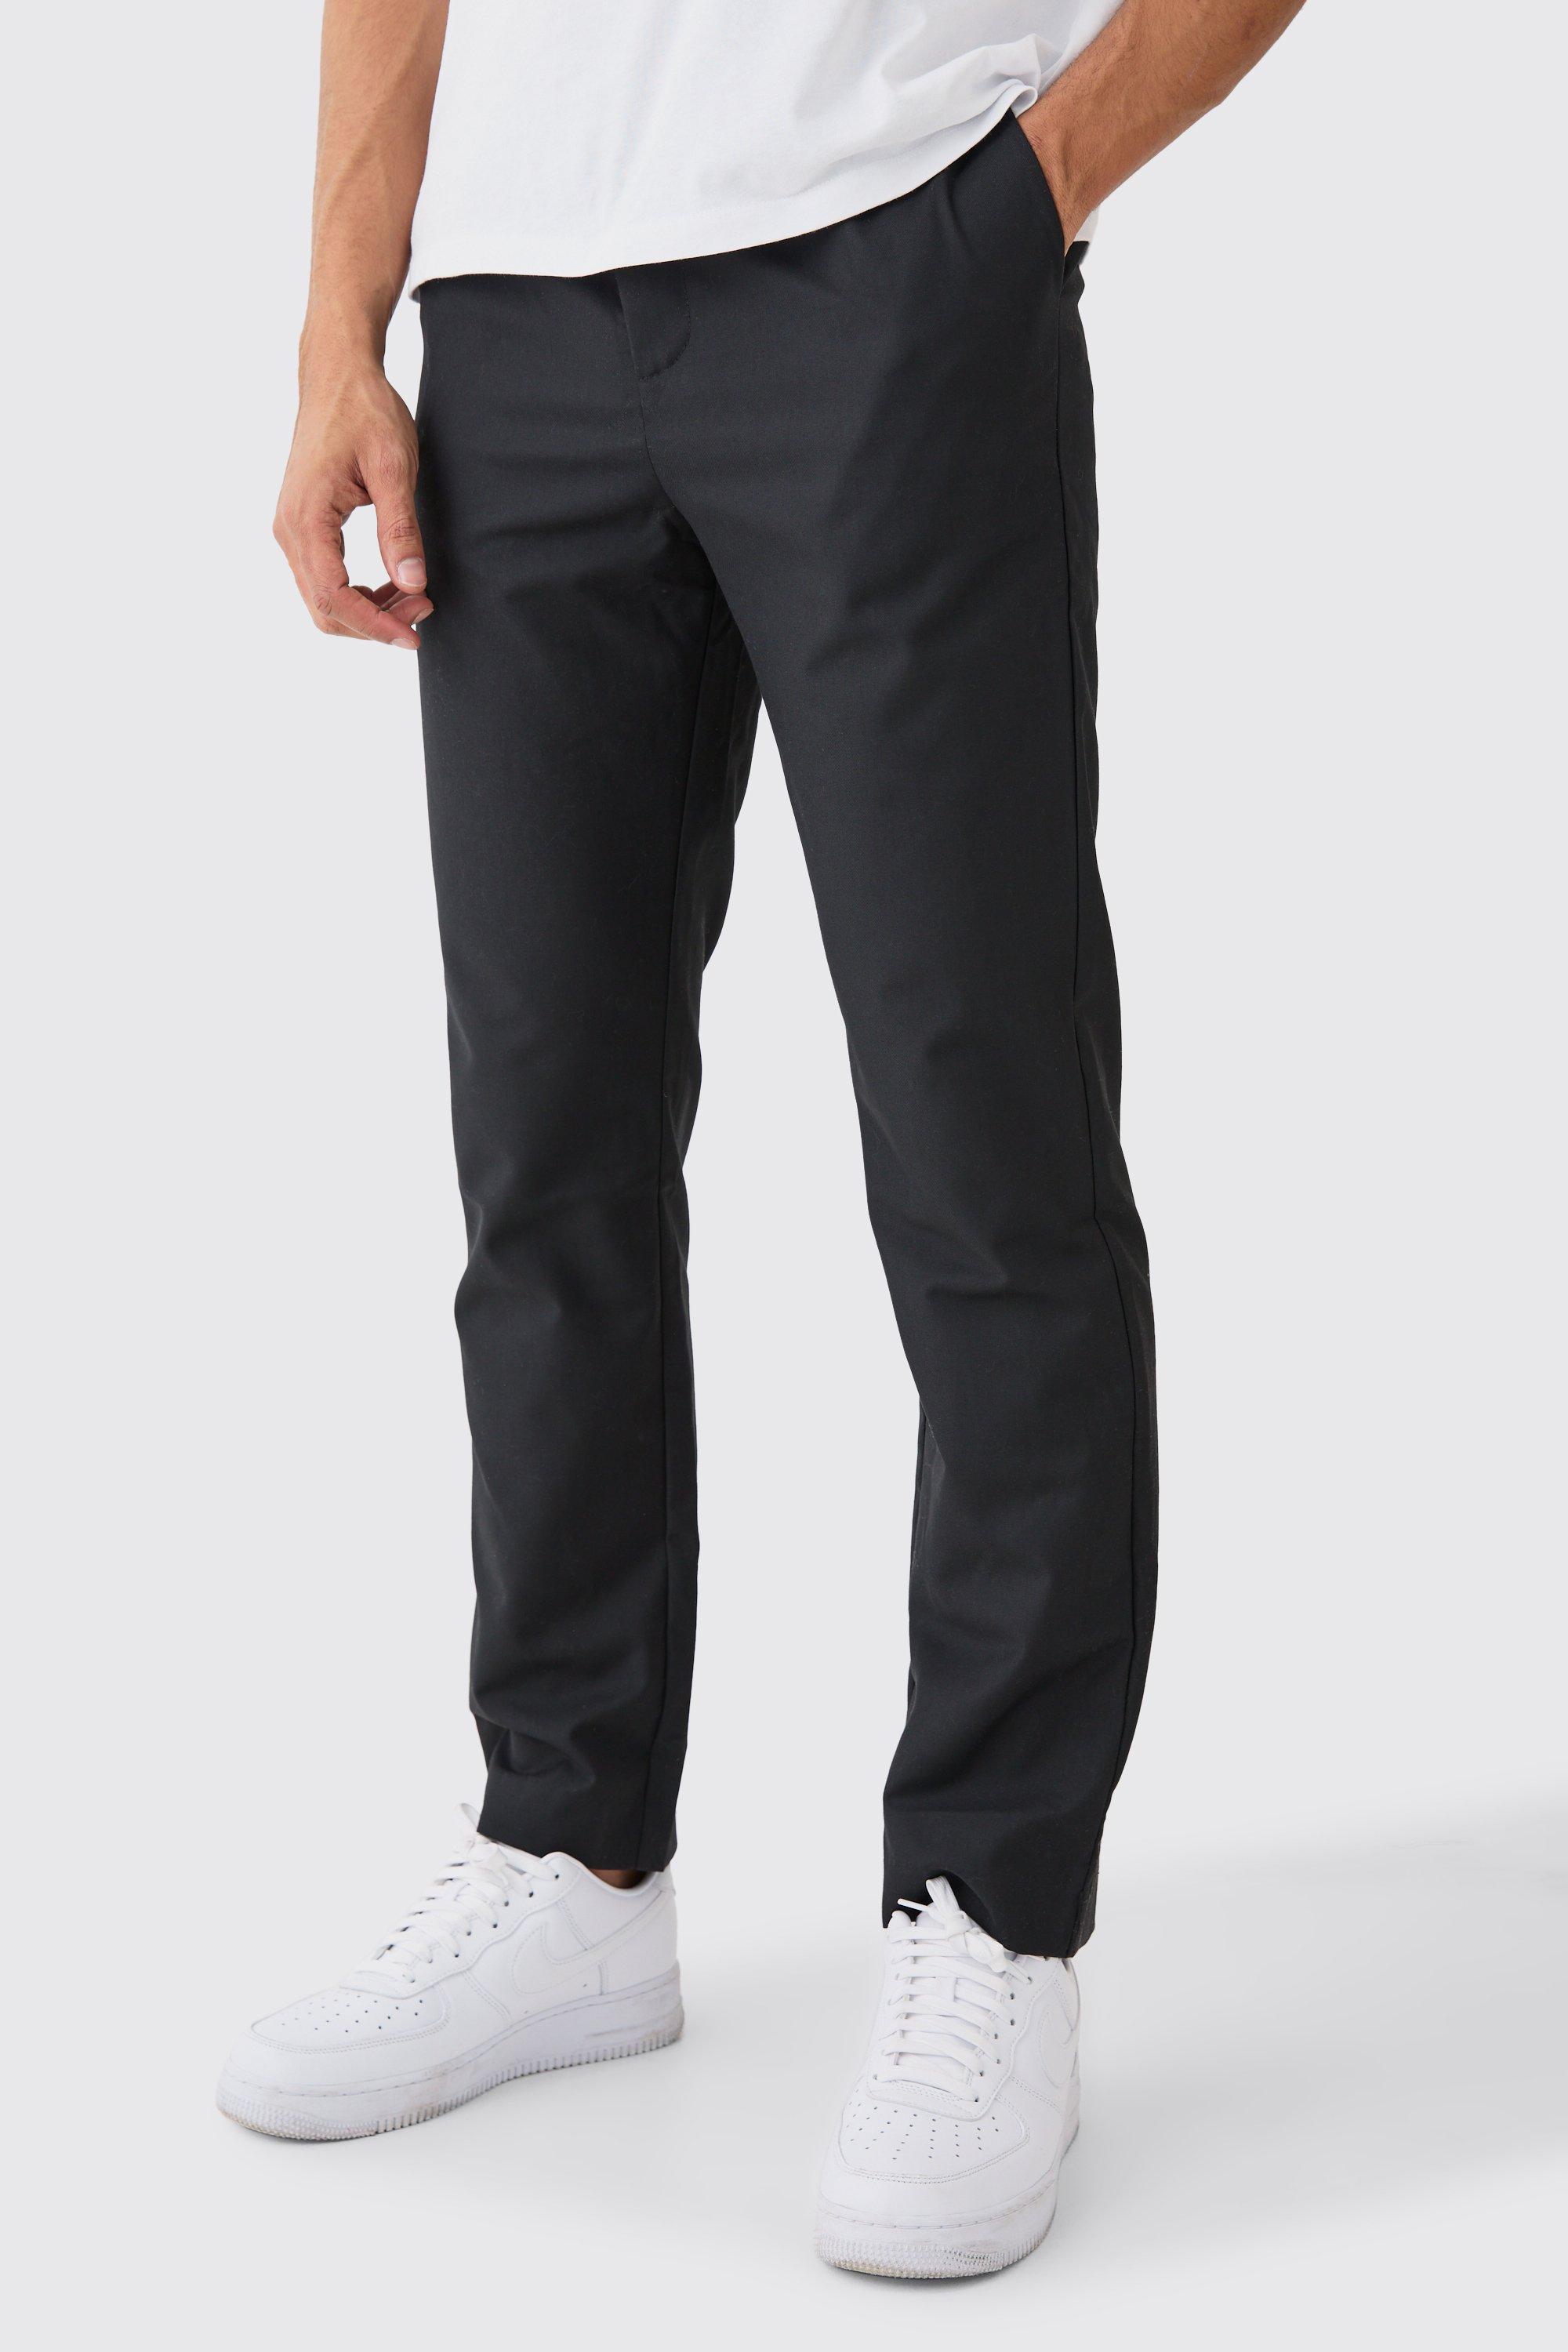 pantalon de costume droit homme - noir - 34, noir